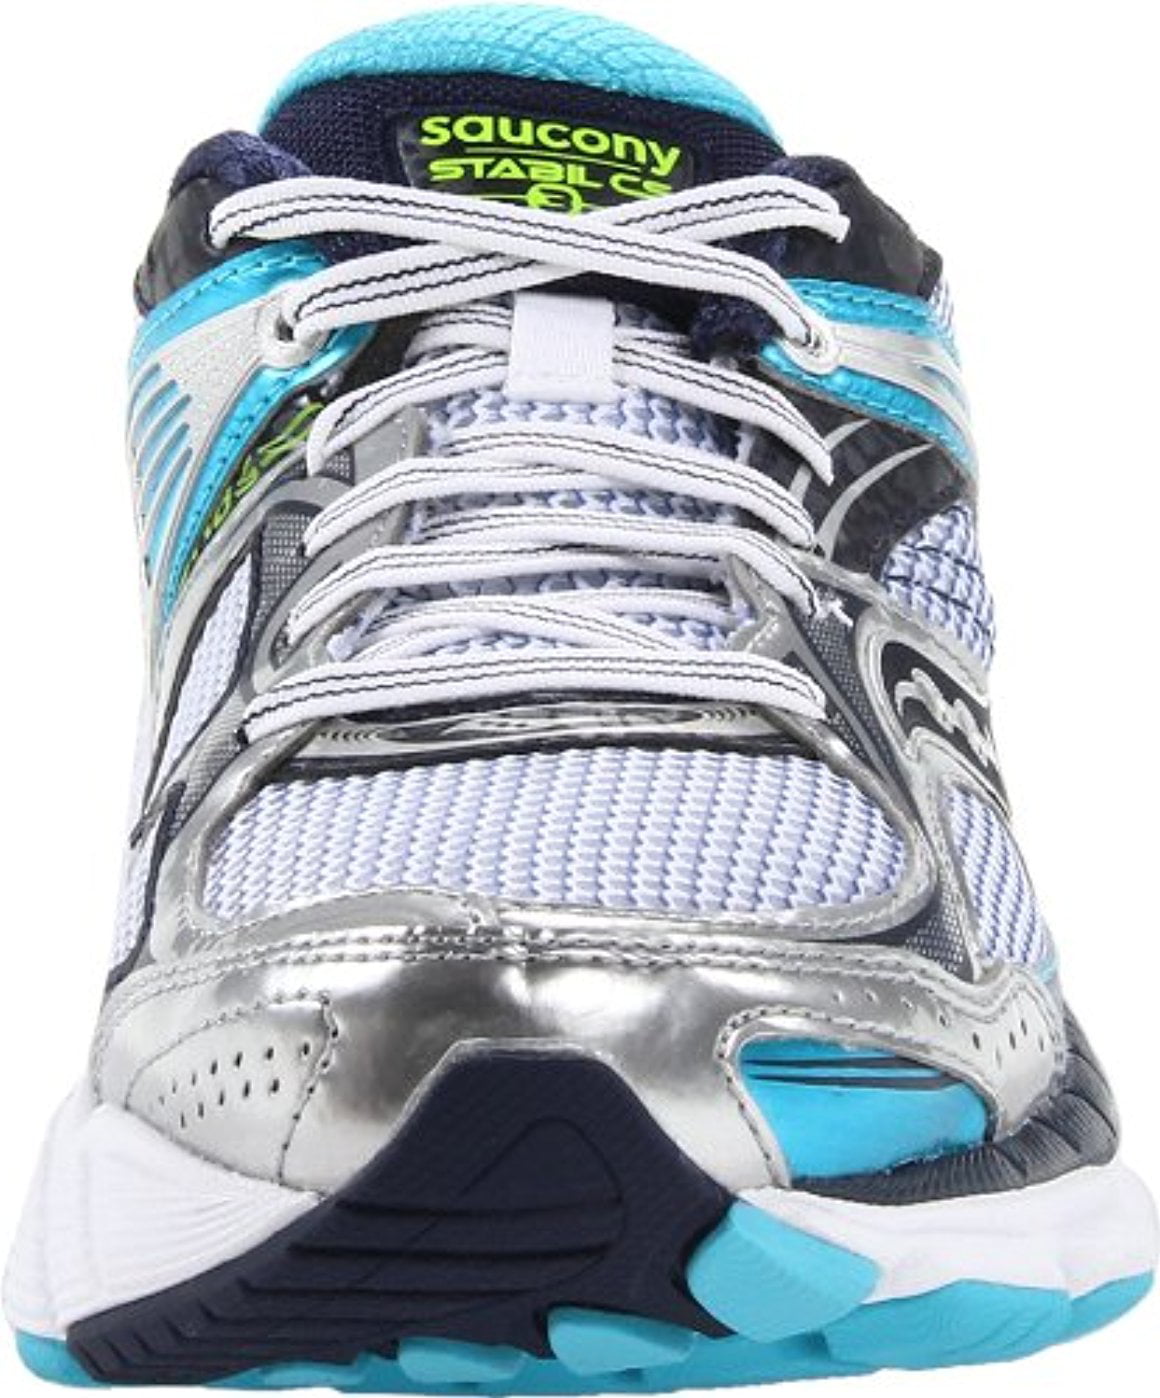 saucony women's stabil cs3 running shoe